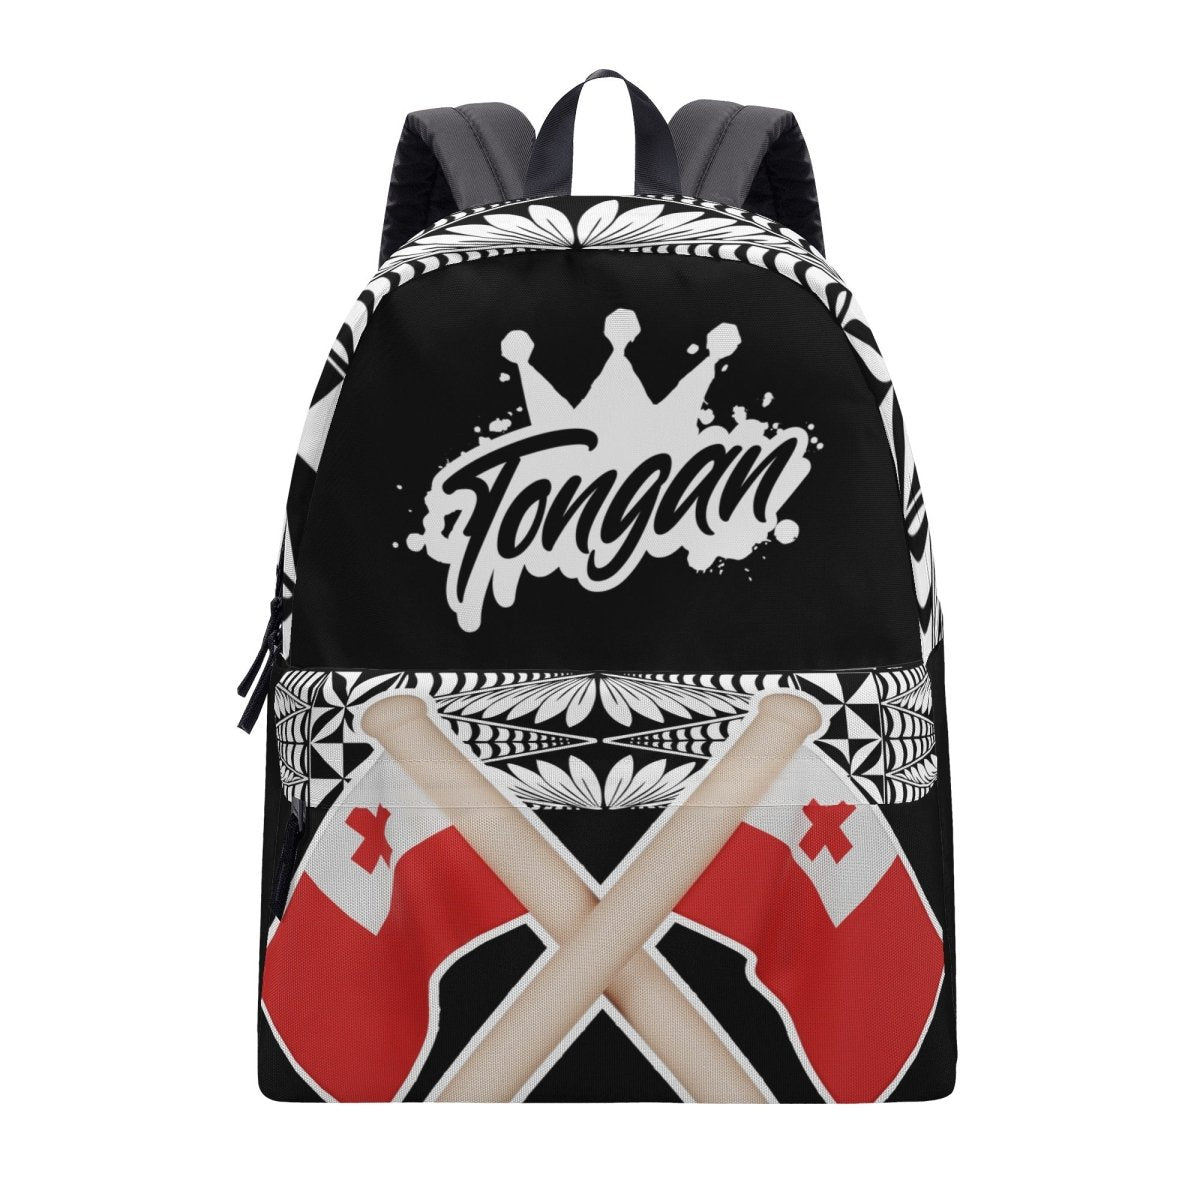 Tongan Crown Backpack - Black - Nesian Kulture